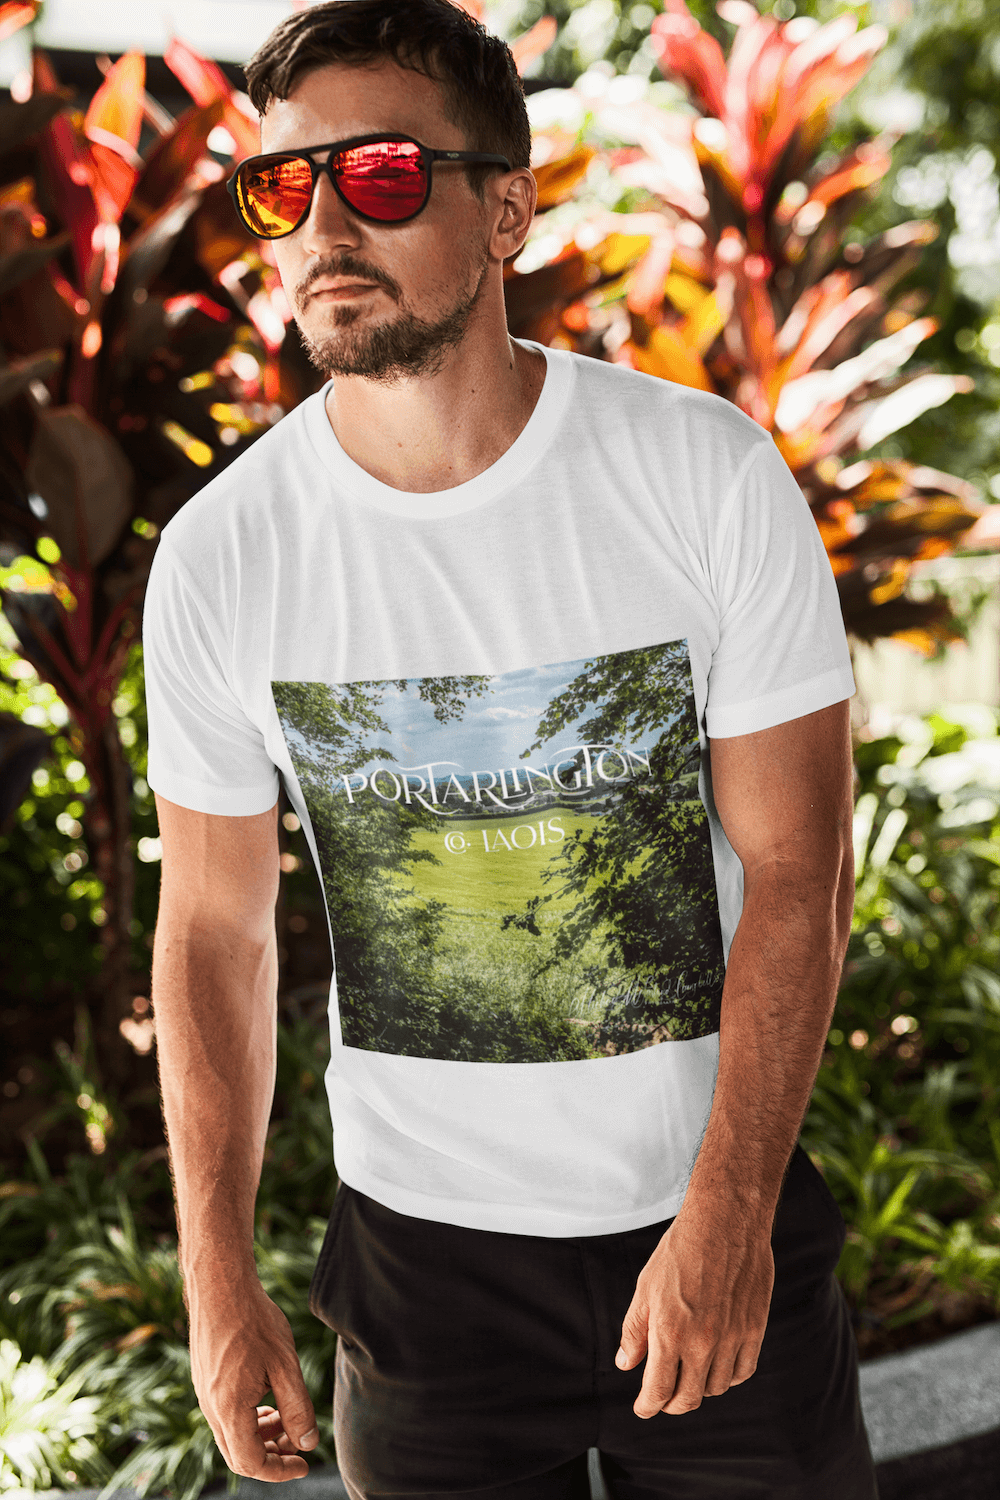 Portarlington Co. Laois t-shirt